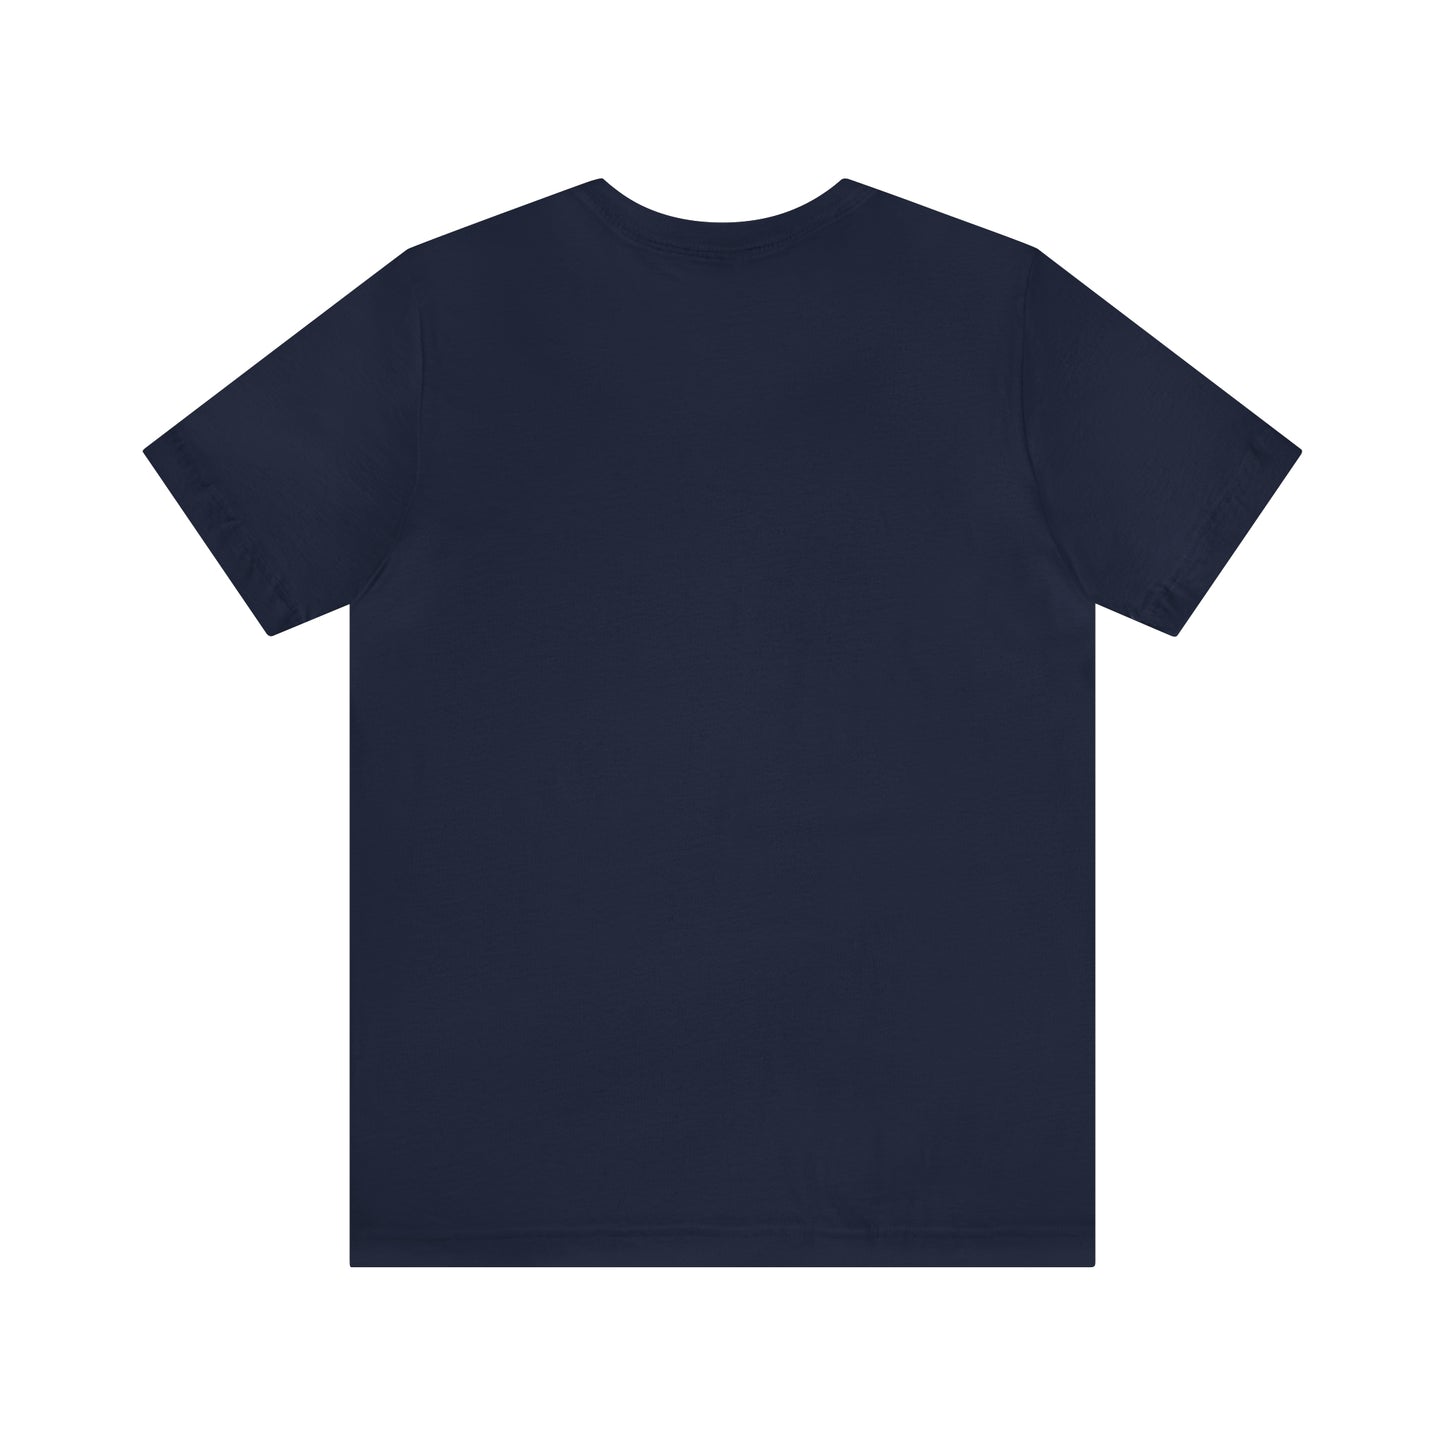 Comfy Short Sleeve T-Shirt: Rabat